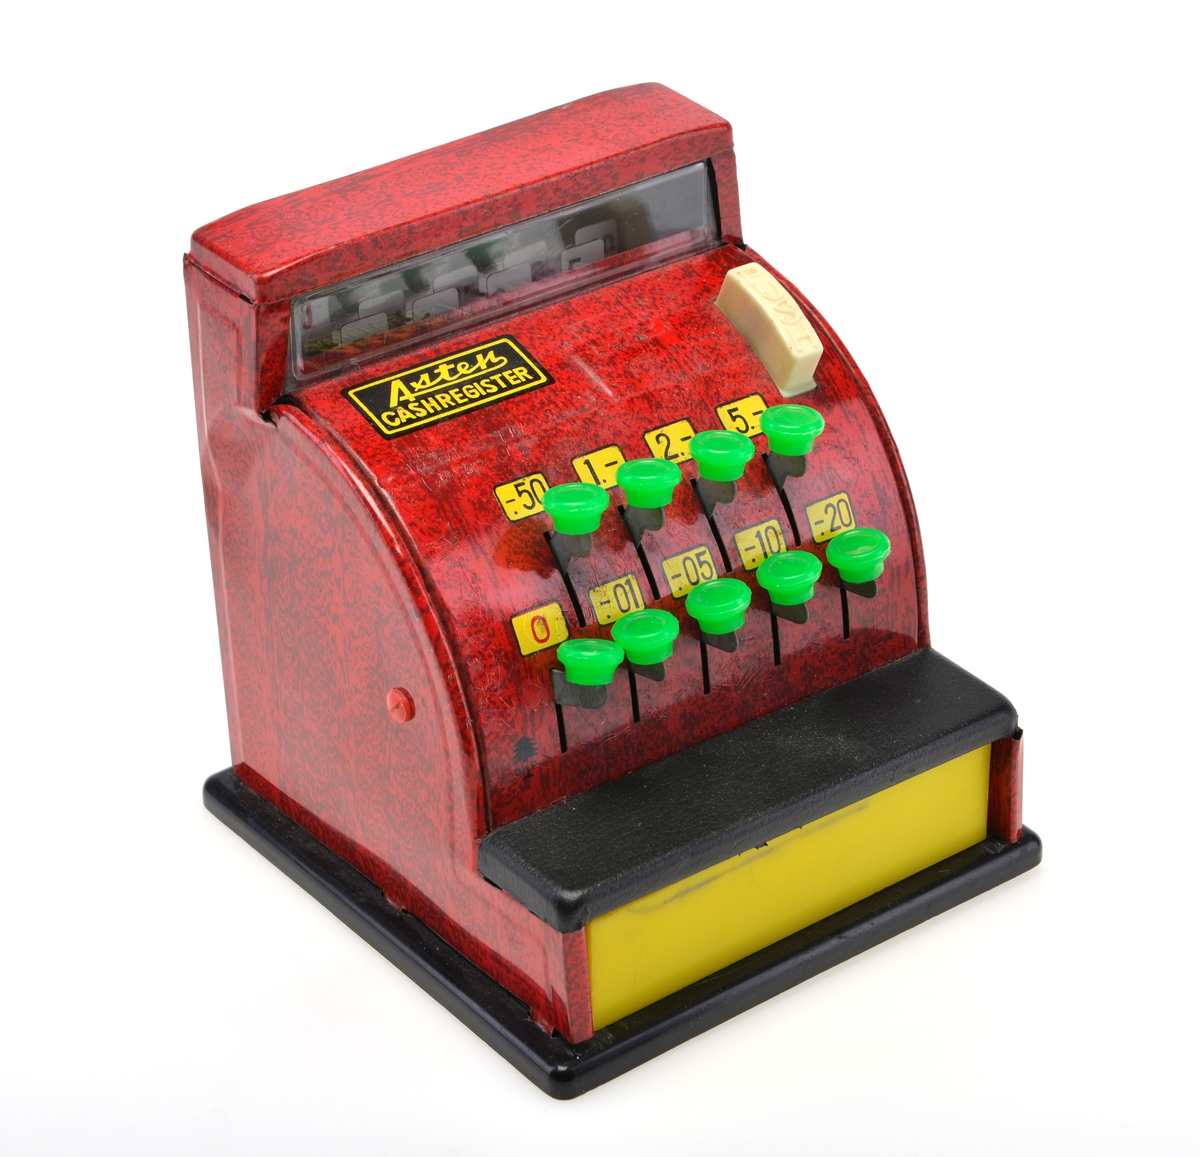 Rødt lekekasseapparat i tinn. Apparatet har flere grønne knapper som lar en velge priser for "varer". Den hvite "PUSH" knappen skal åpne den gule skuffen og lage en bjellelyd, men denne funksjonen fungerer ikke grunnet gjenstandens tilstand. Apparatet har opprinnelig hatt mynter som fulgte med.